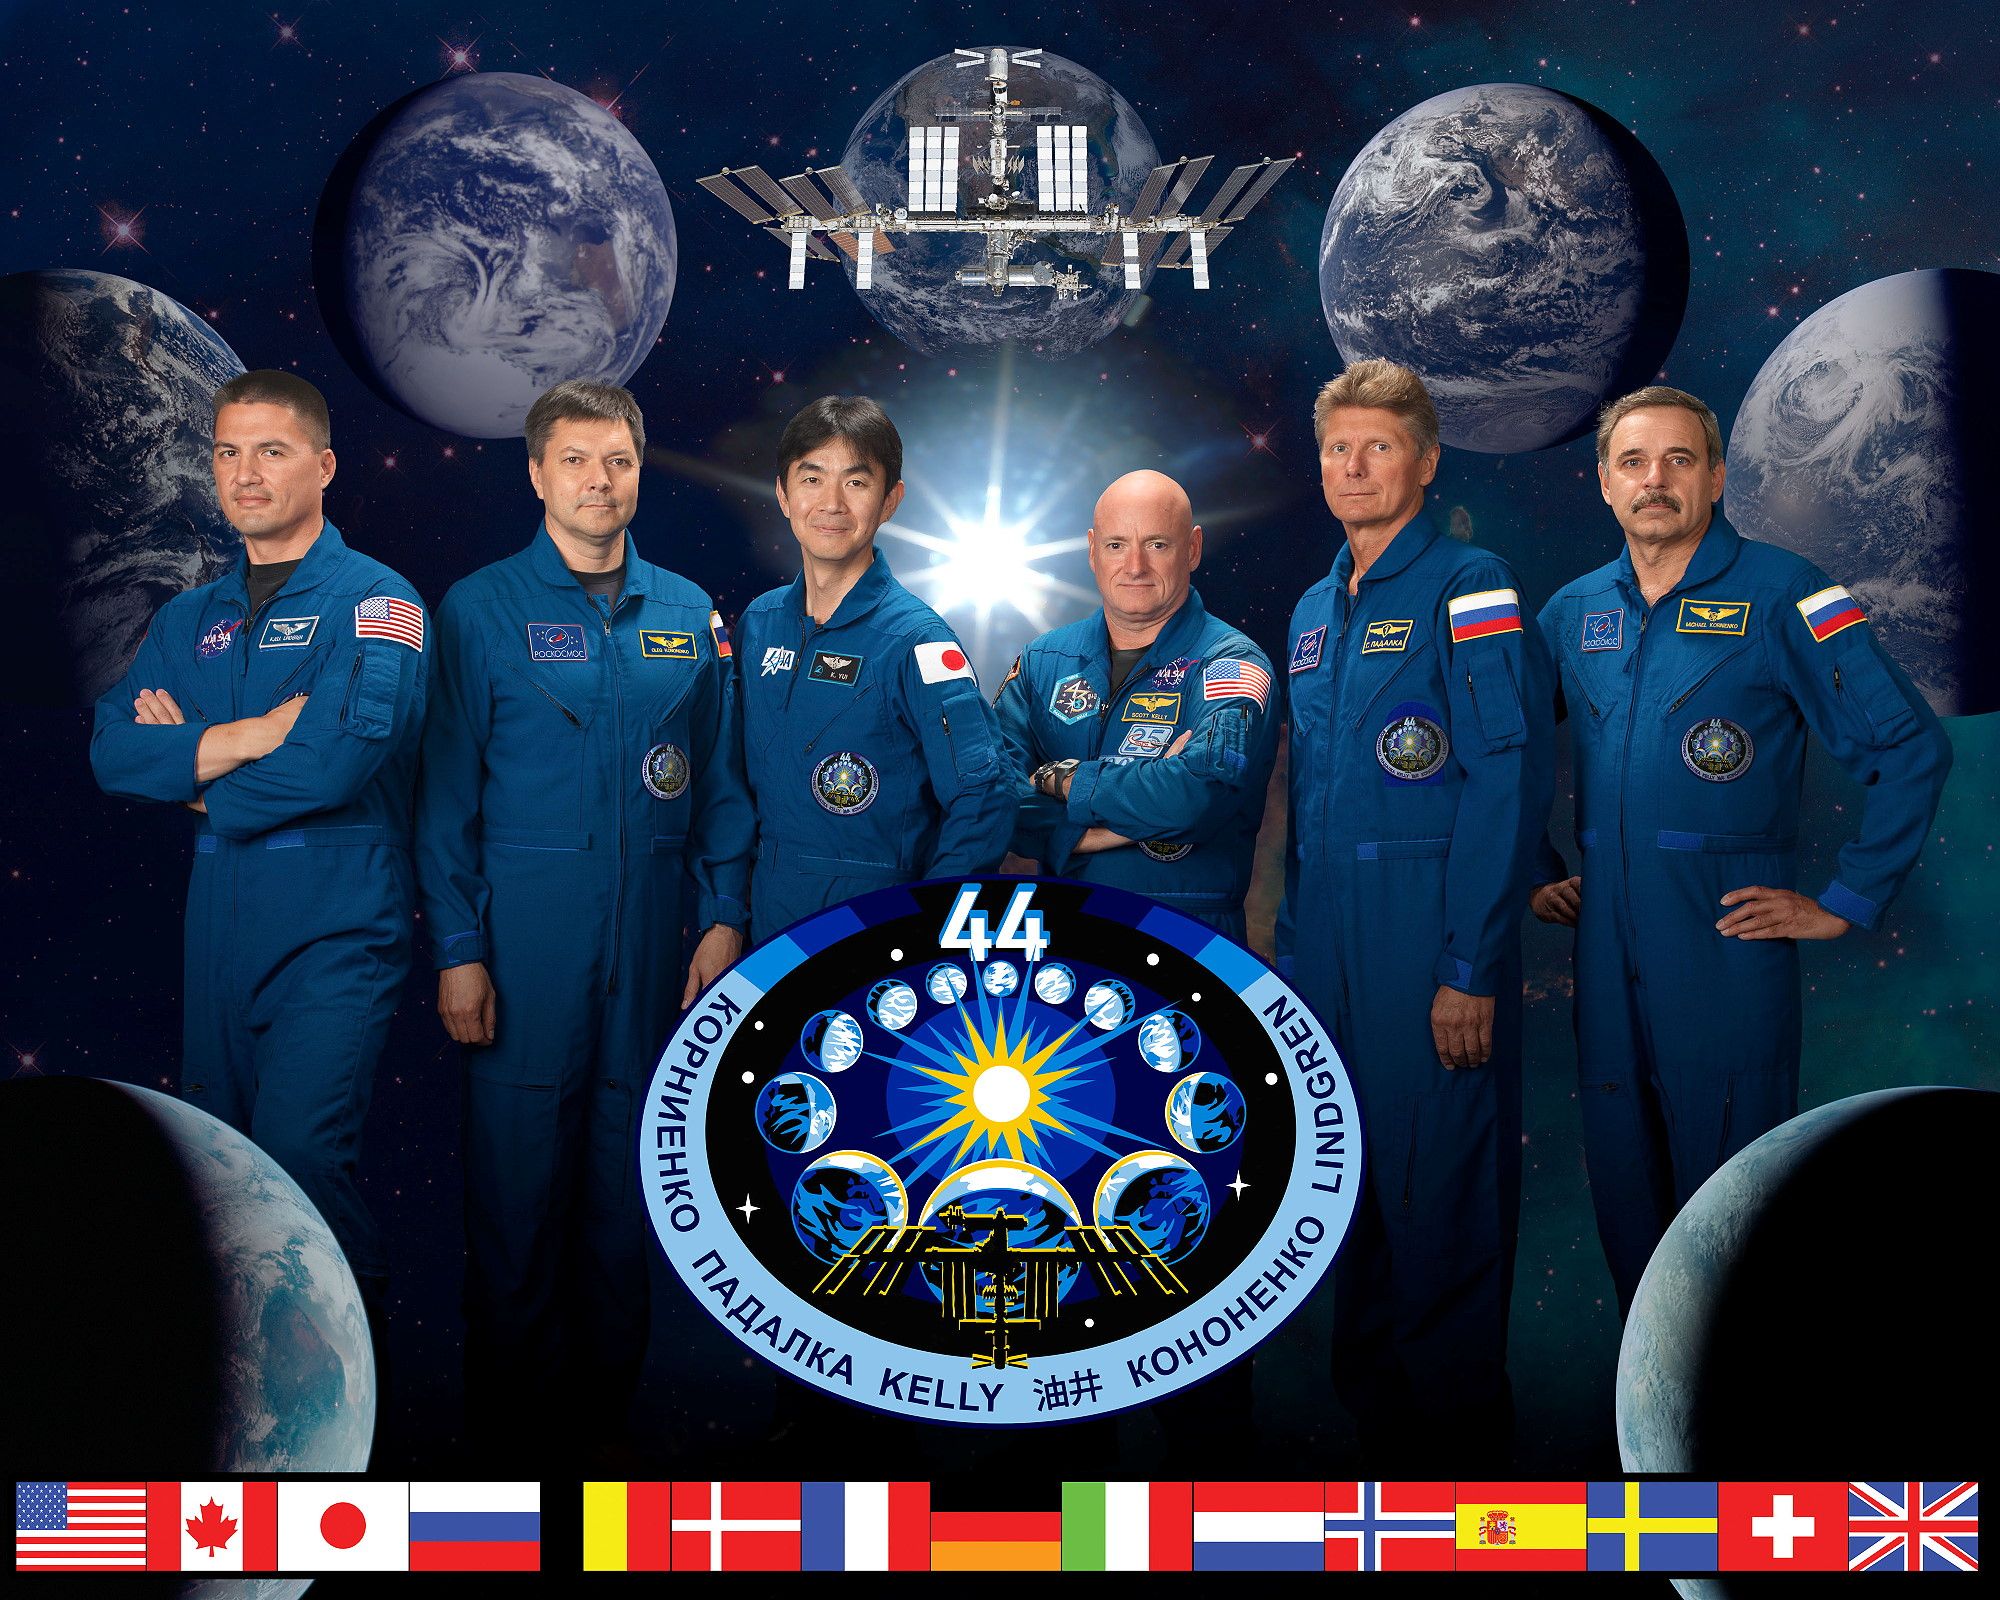 Expédition 44, de gauche à droite : (Kjell Lindgren (NASA), Oleg Kononenko (Roscosmos), Kimiya yui (JAXA), Scott Kelly (NASA), Gennady Padalka (Roscosmos), Mikhail Korniyenko (Roscosmos))